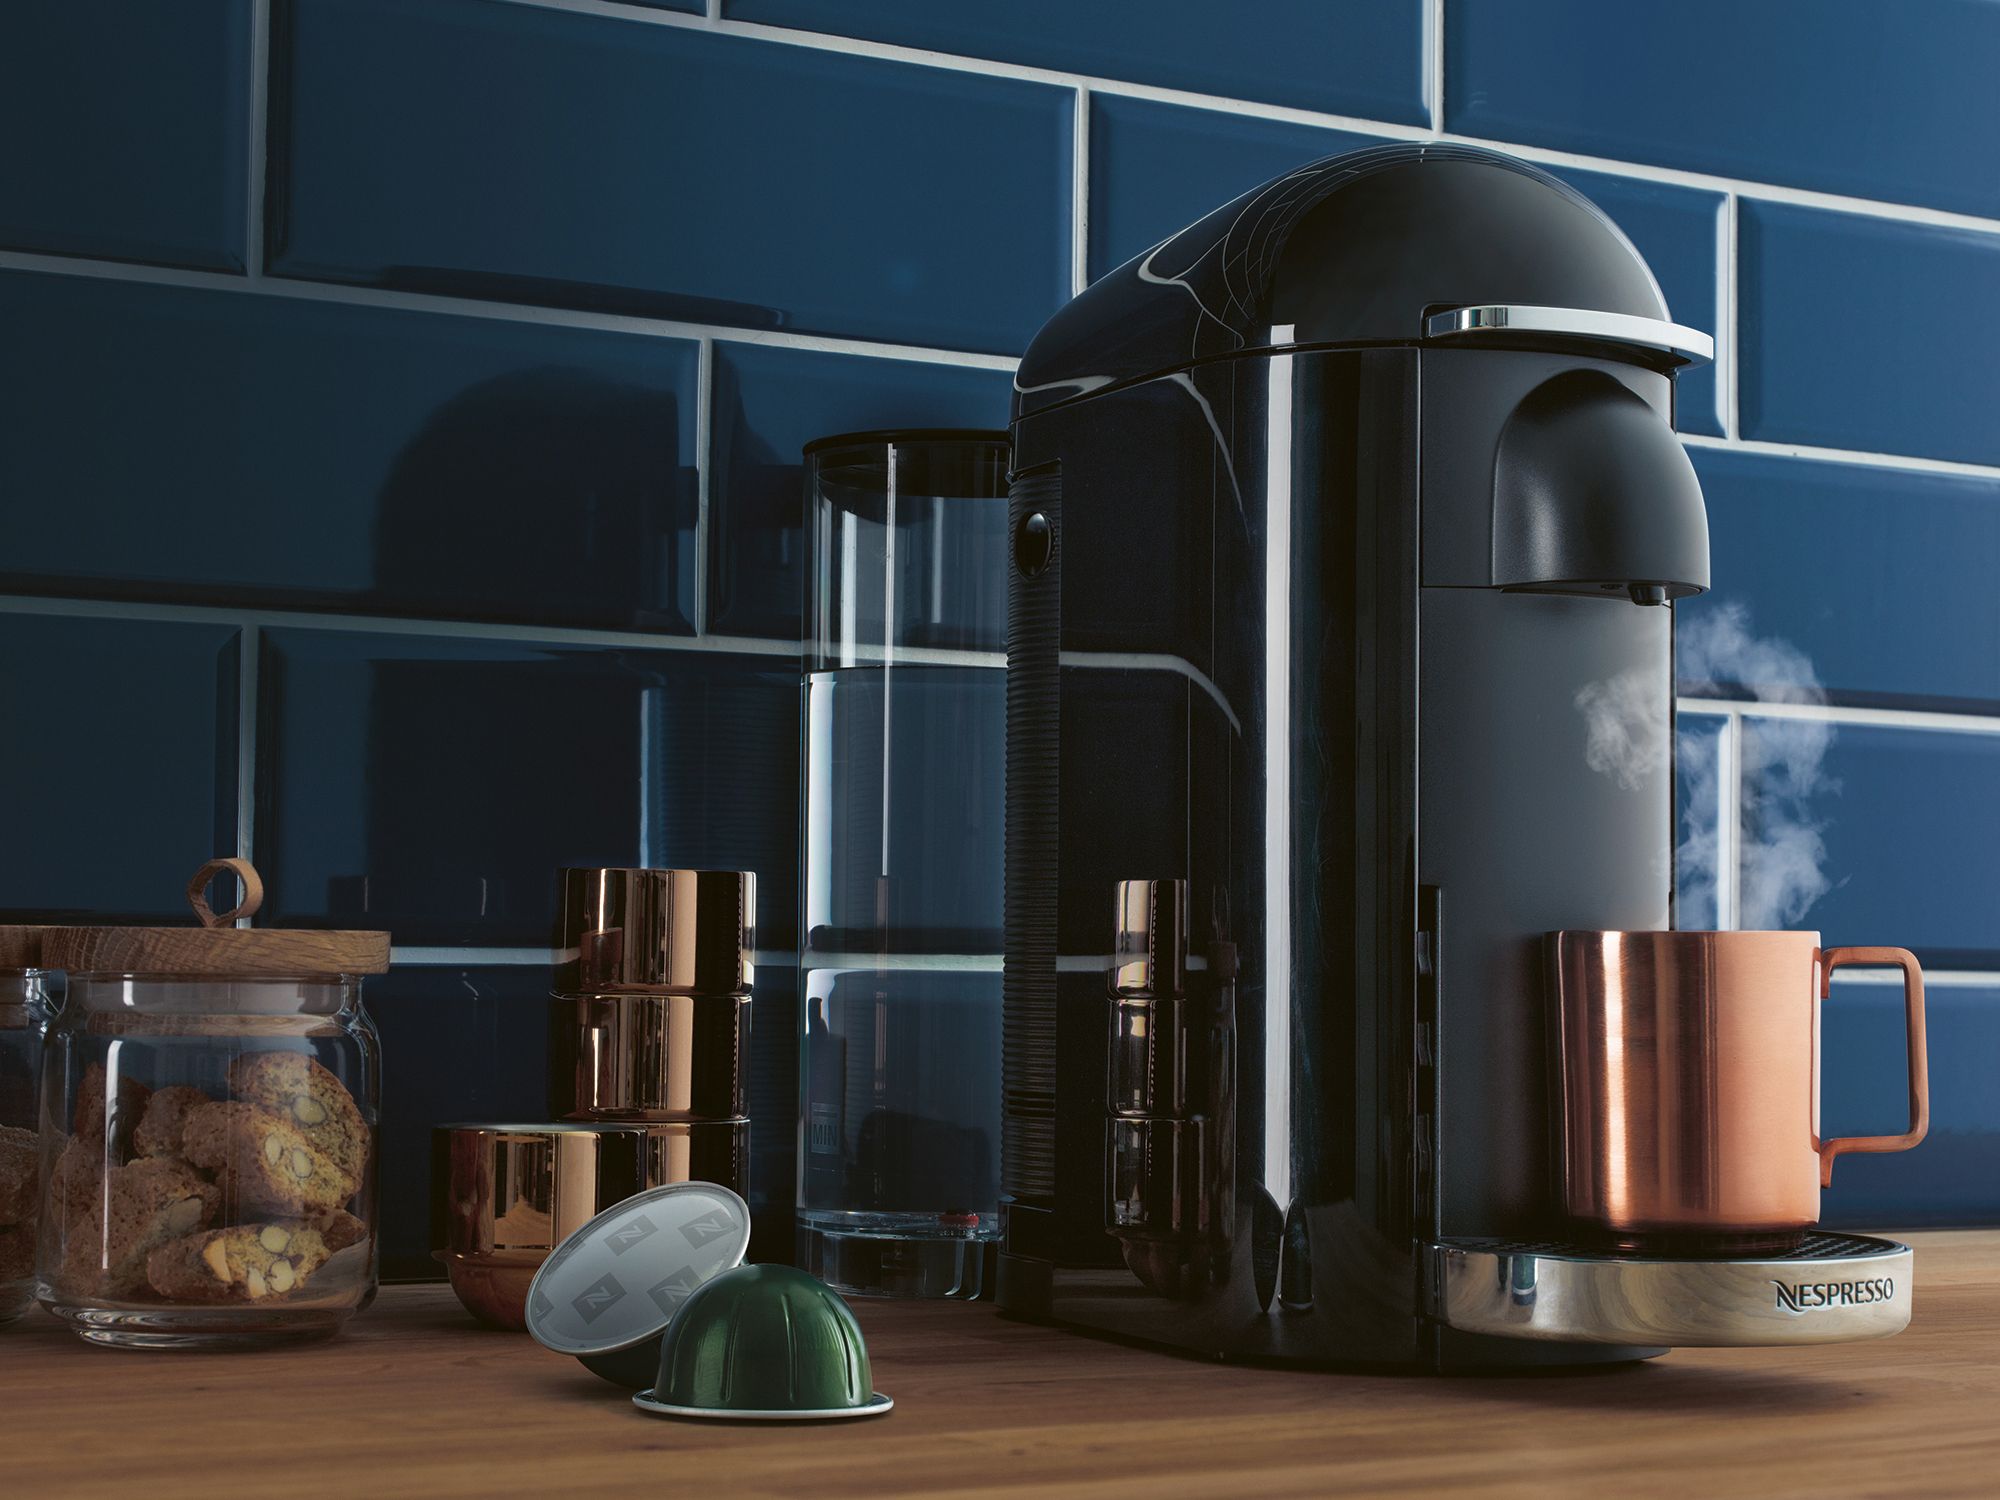 Coffee machine in kitchen